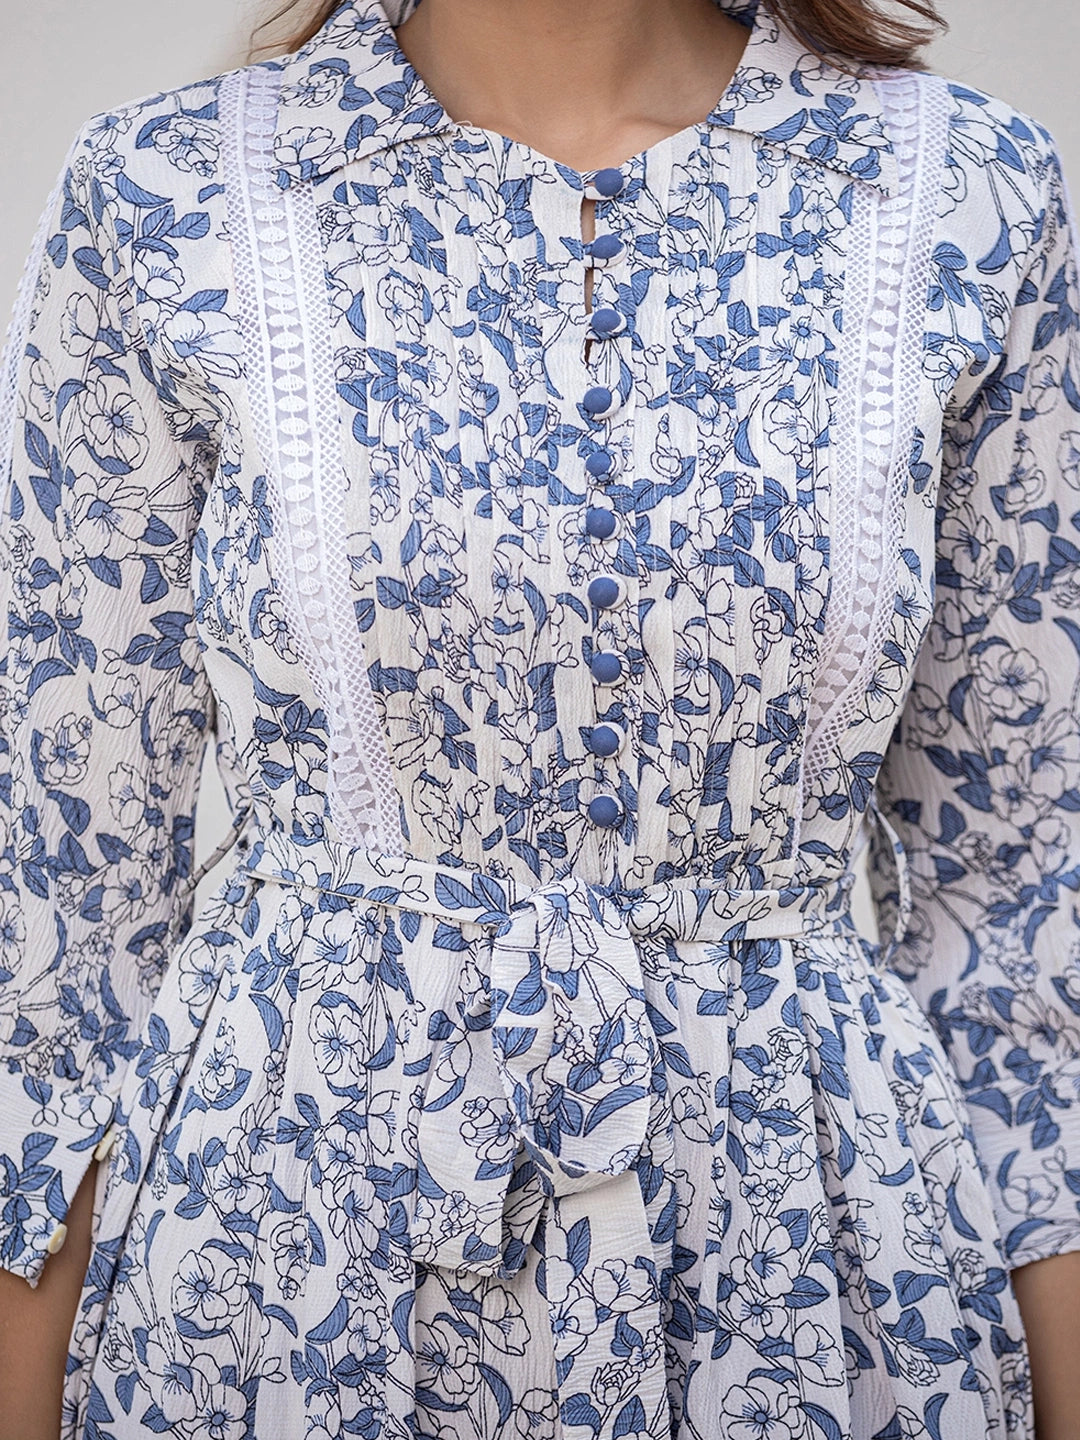 Summer Serenade: Cotton Short Dress